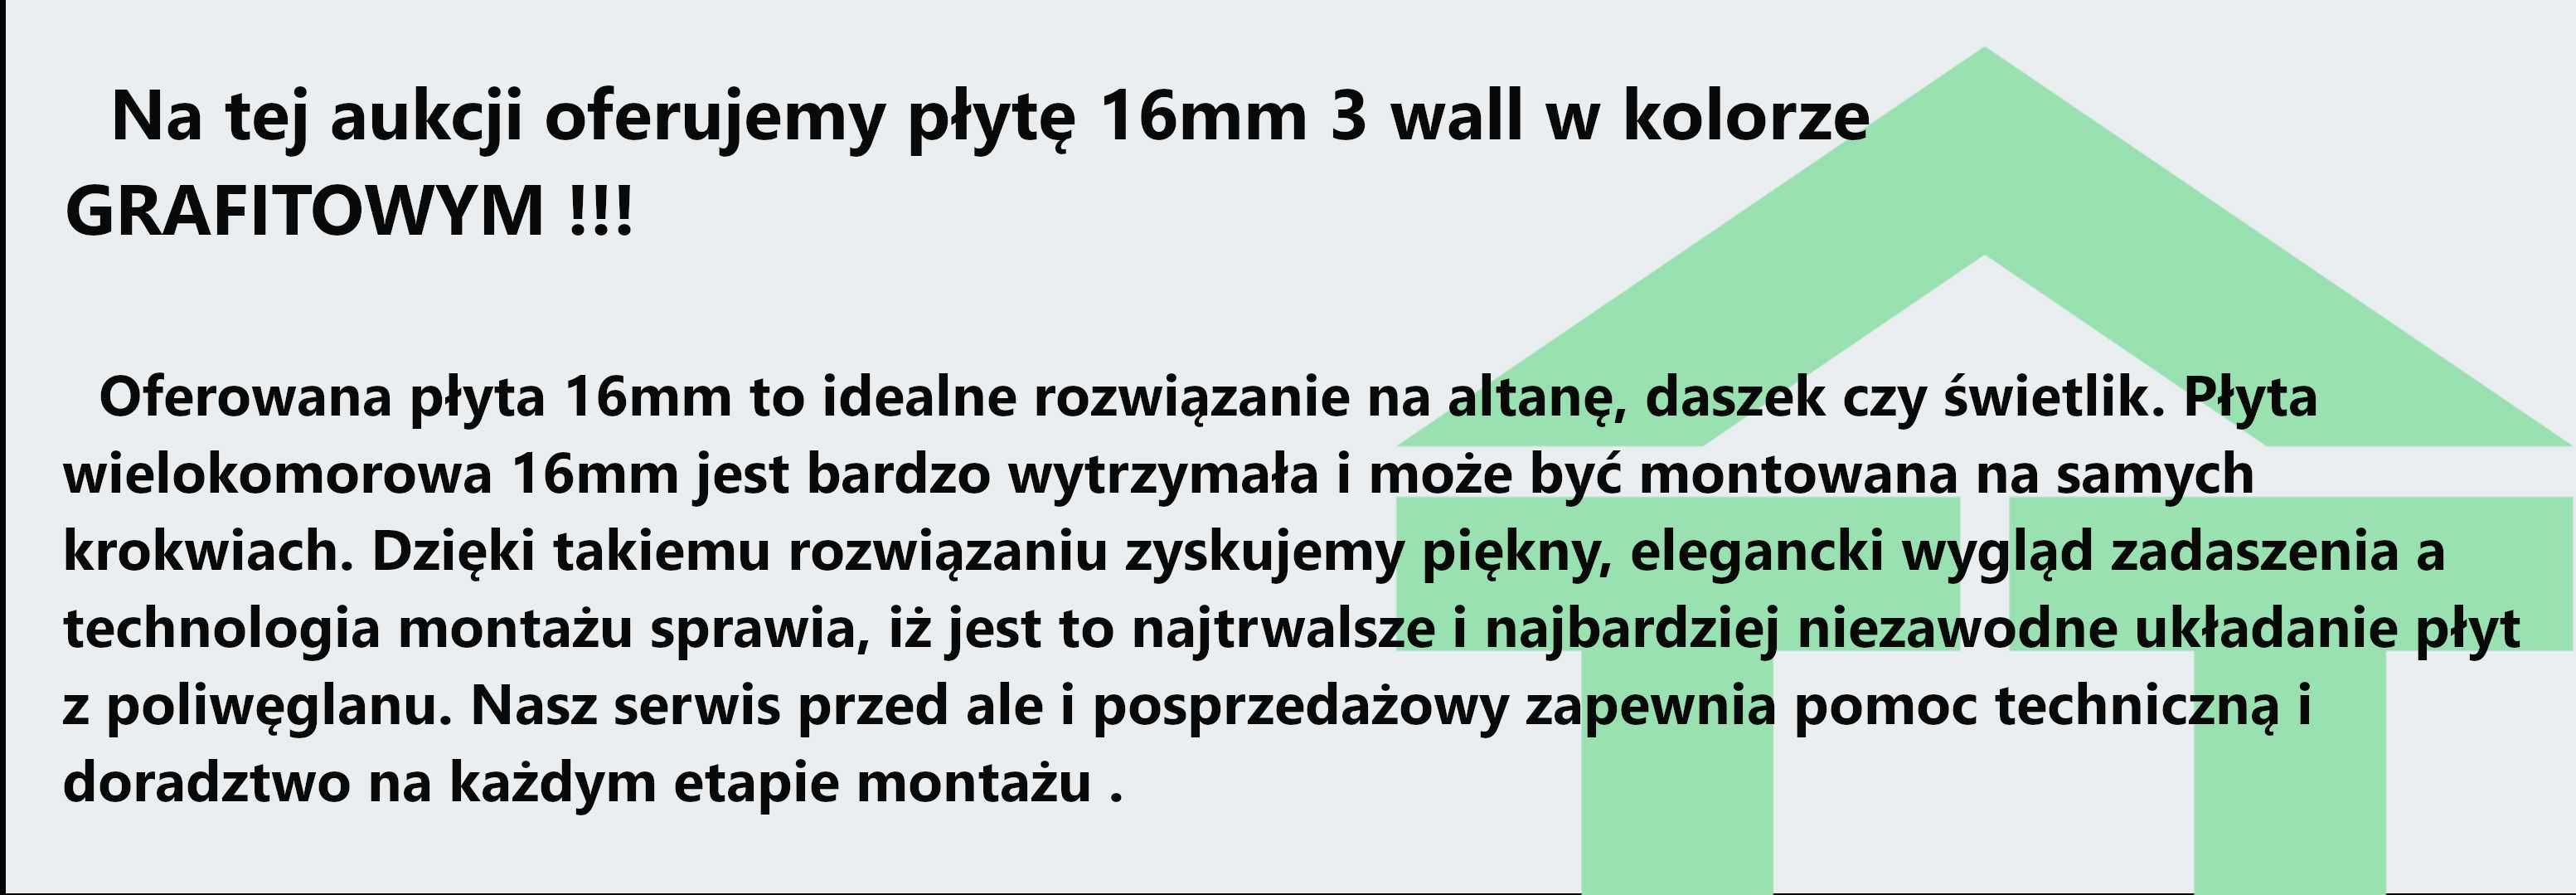 Poliwęglan komorowy 16mm GRAFIT - DOCINANY NA WYMIAR